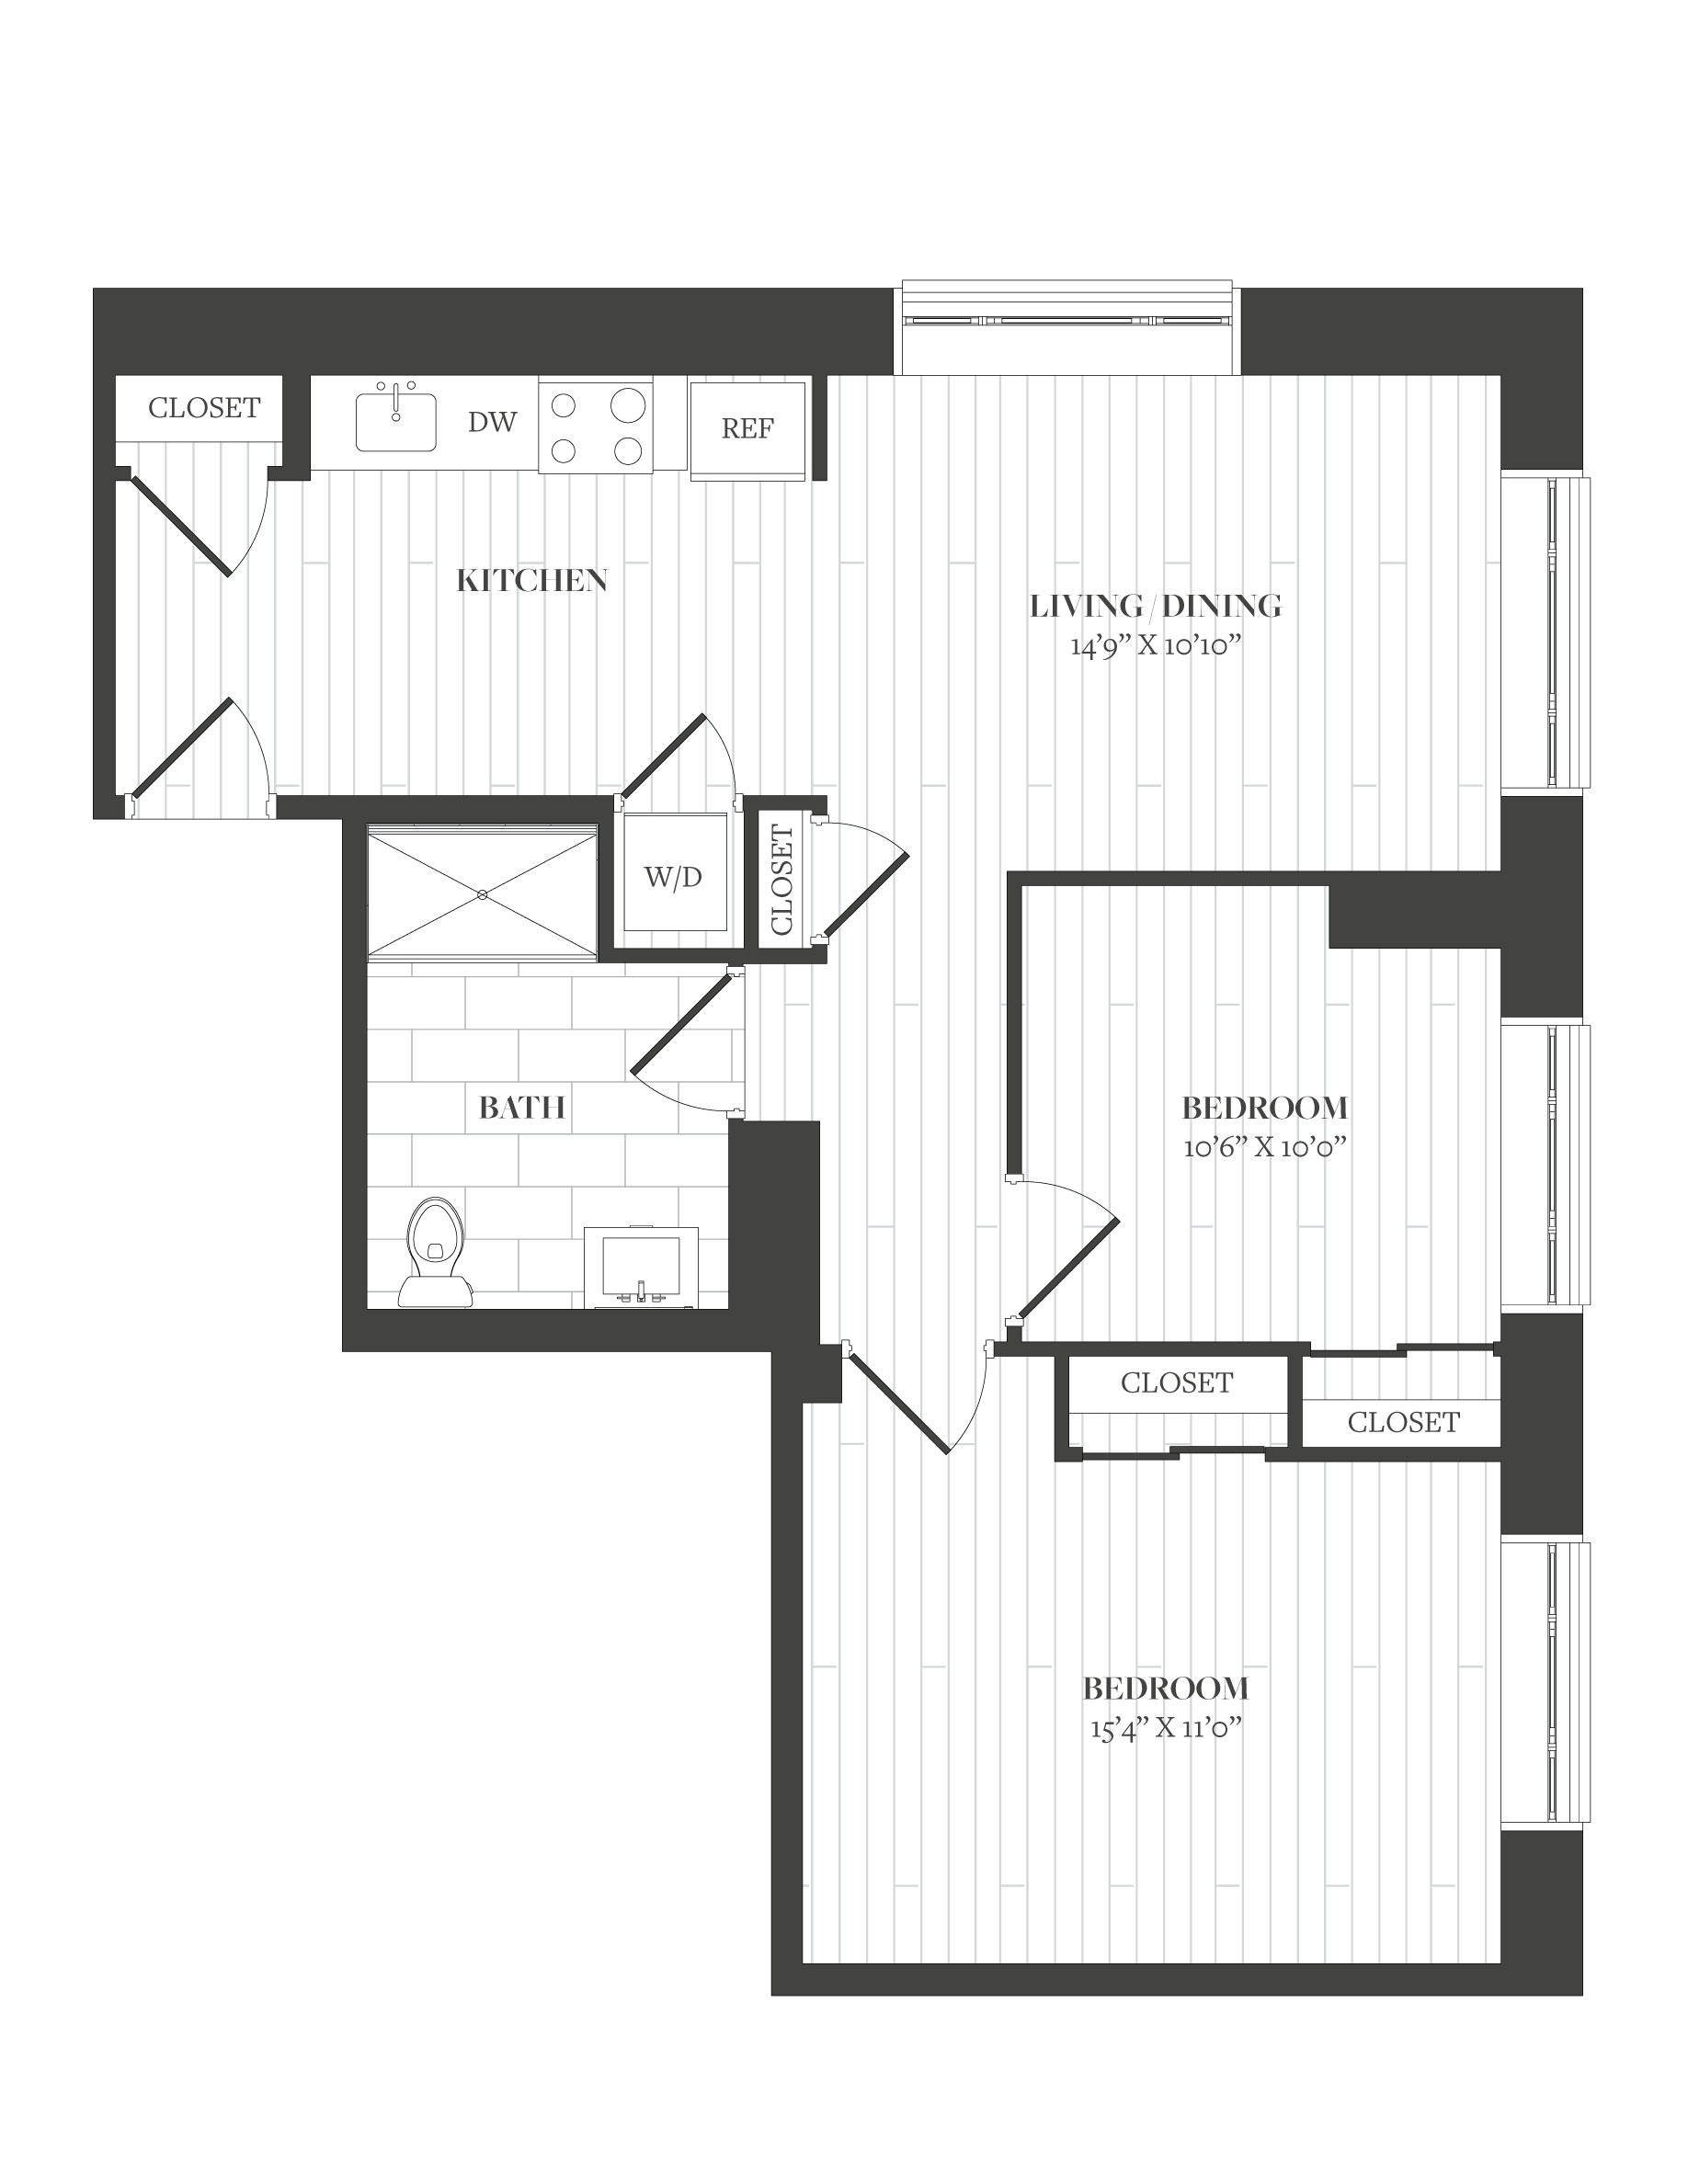 Floorplan image of unit 903